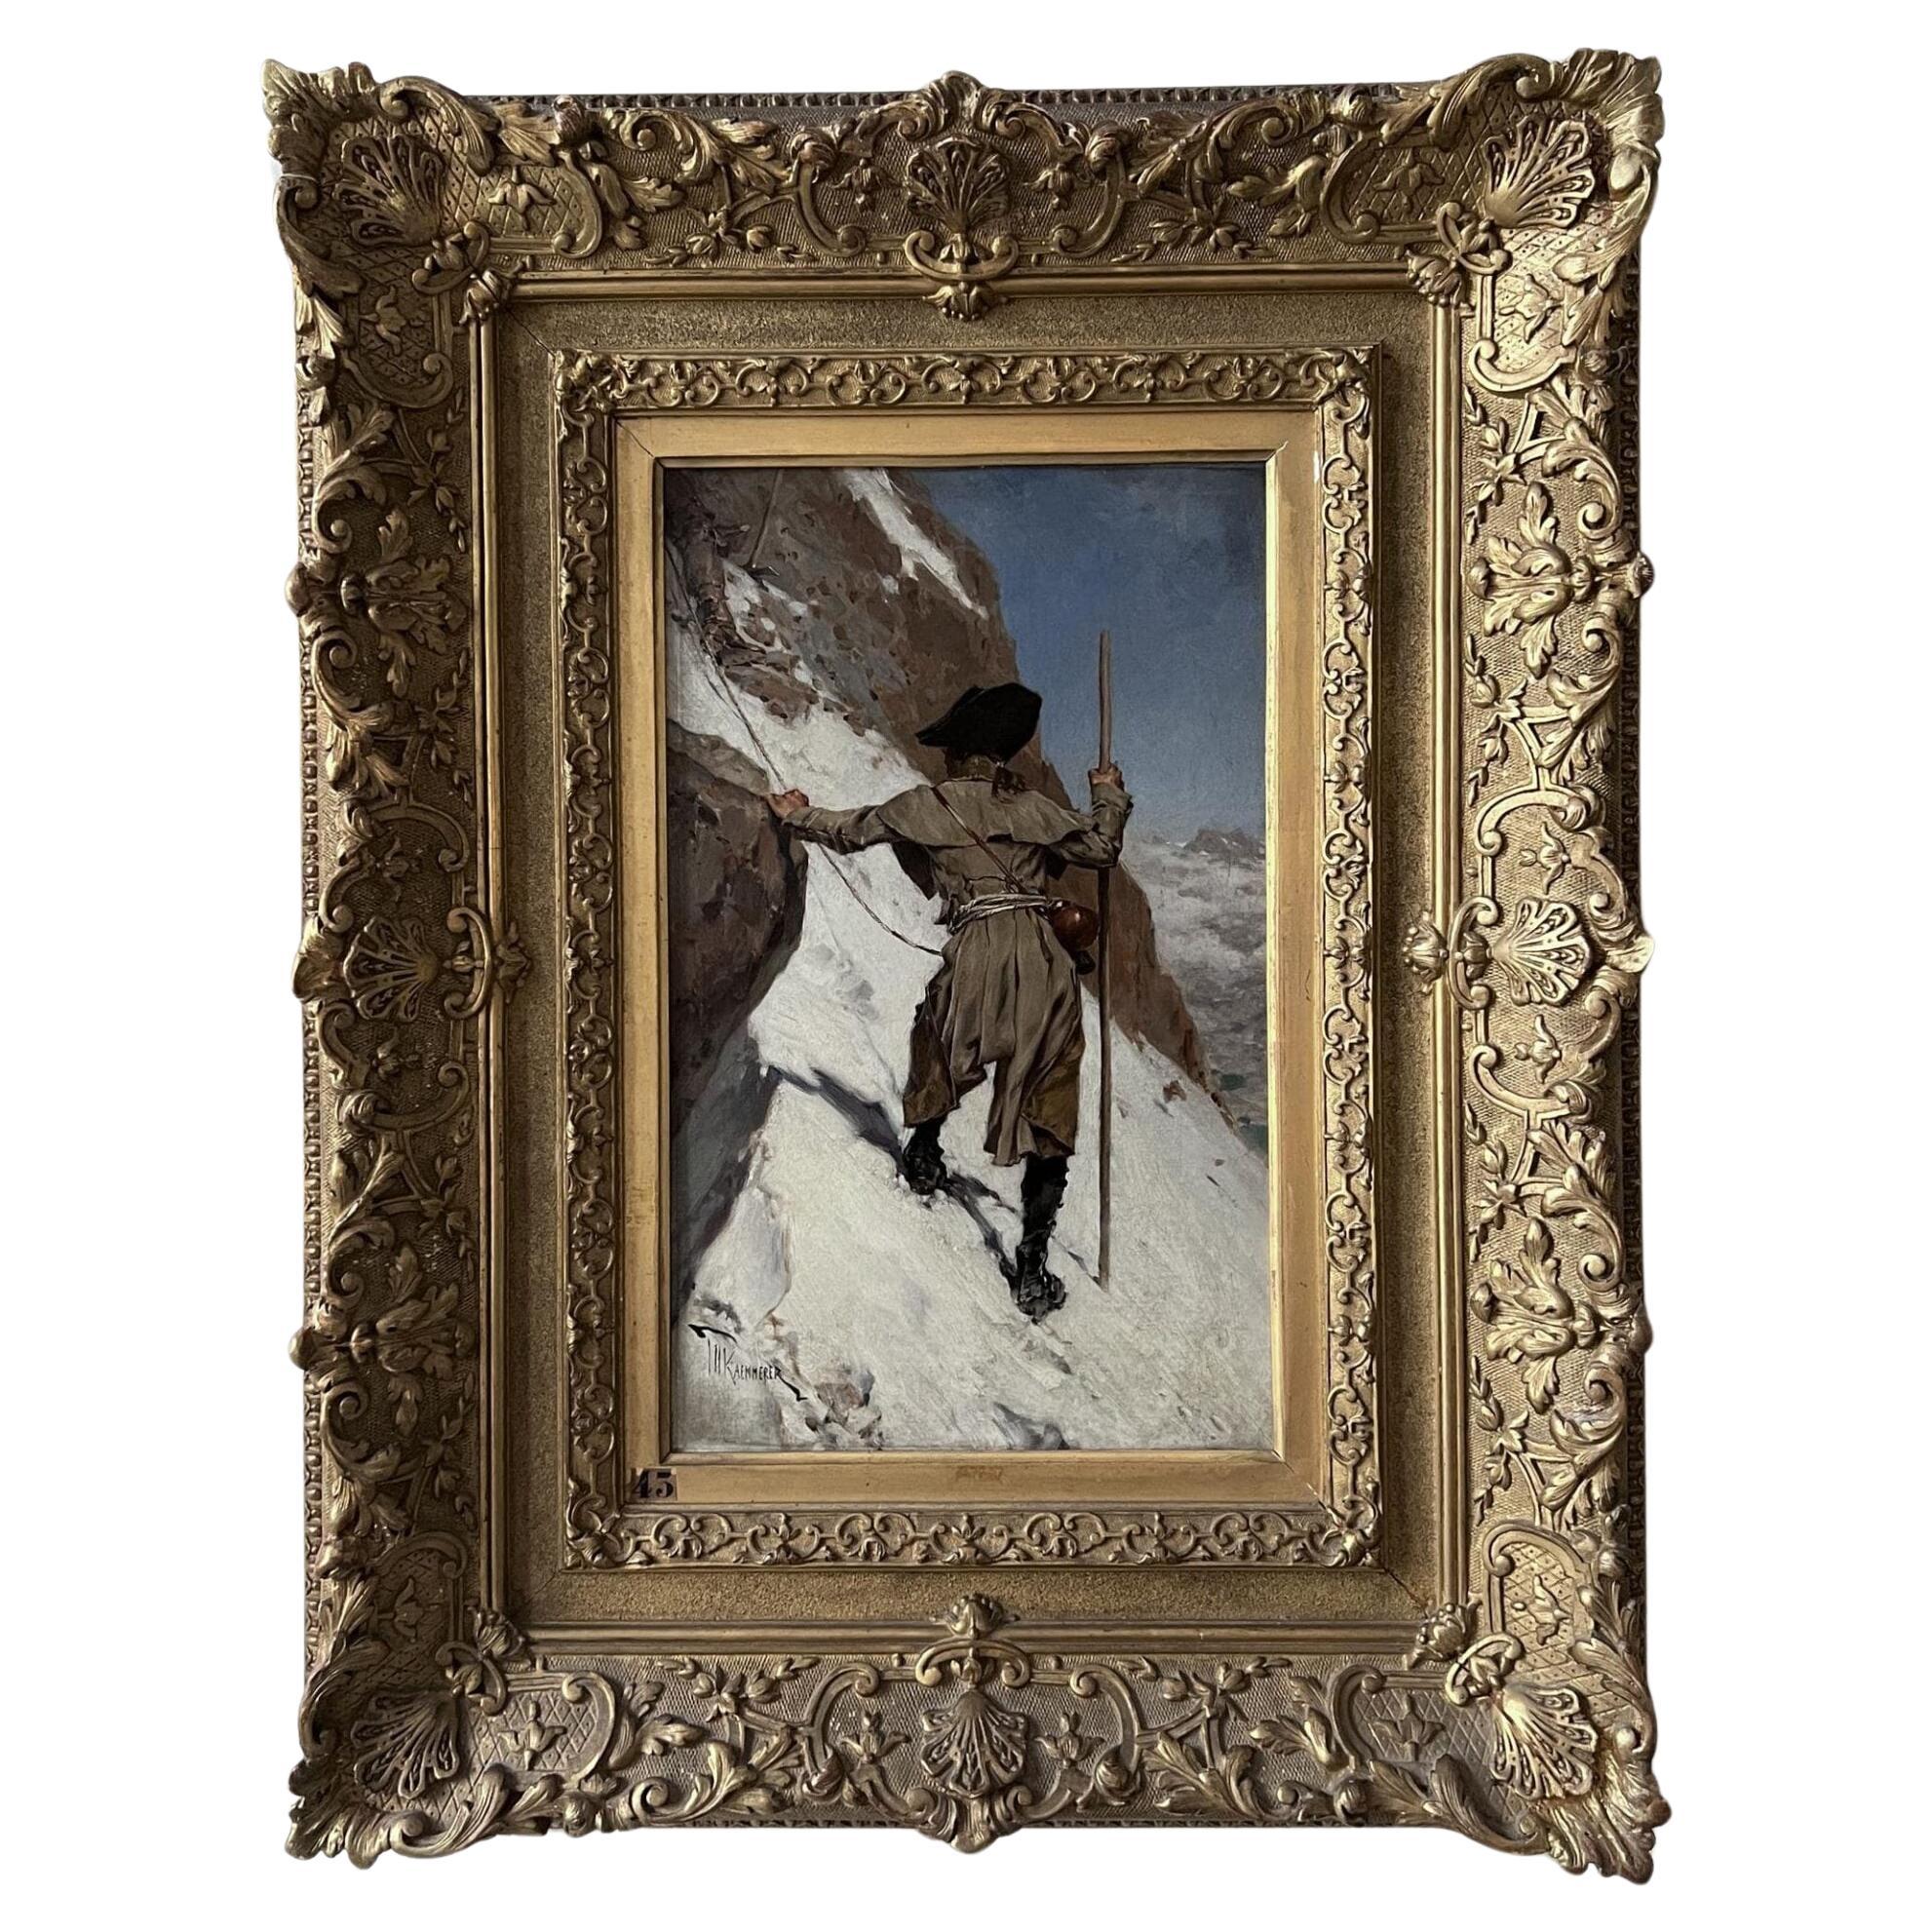 Frederik Hendrik Kaemmerer ‘Mountaineer’ Oil Painting